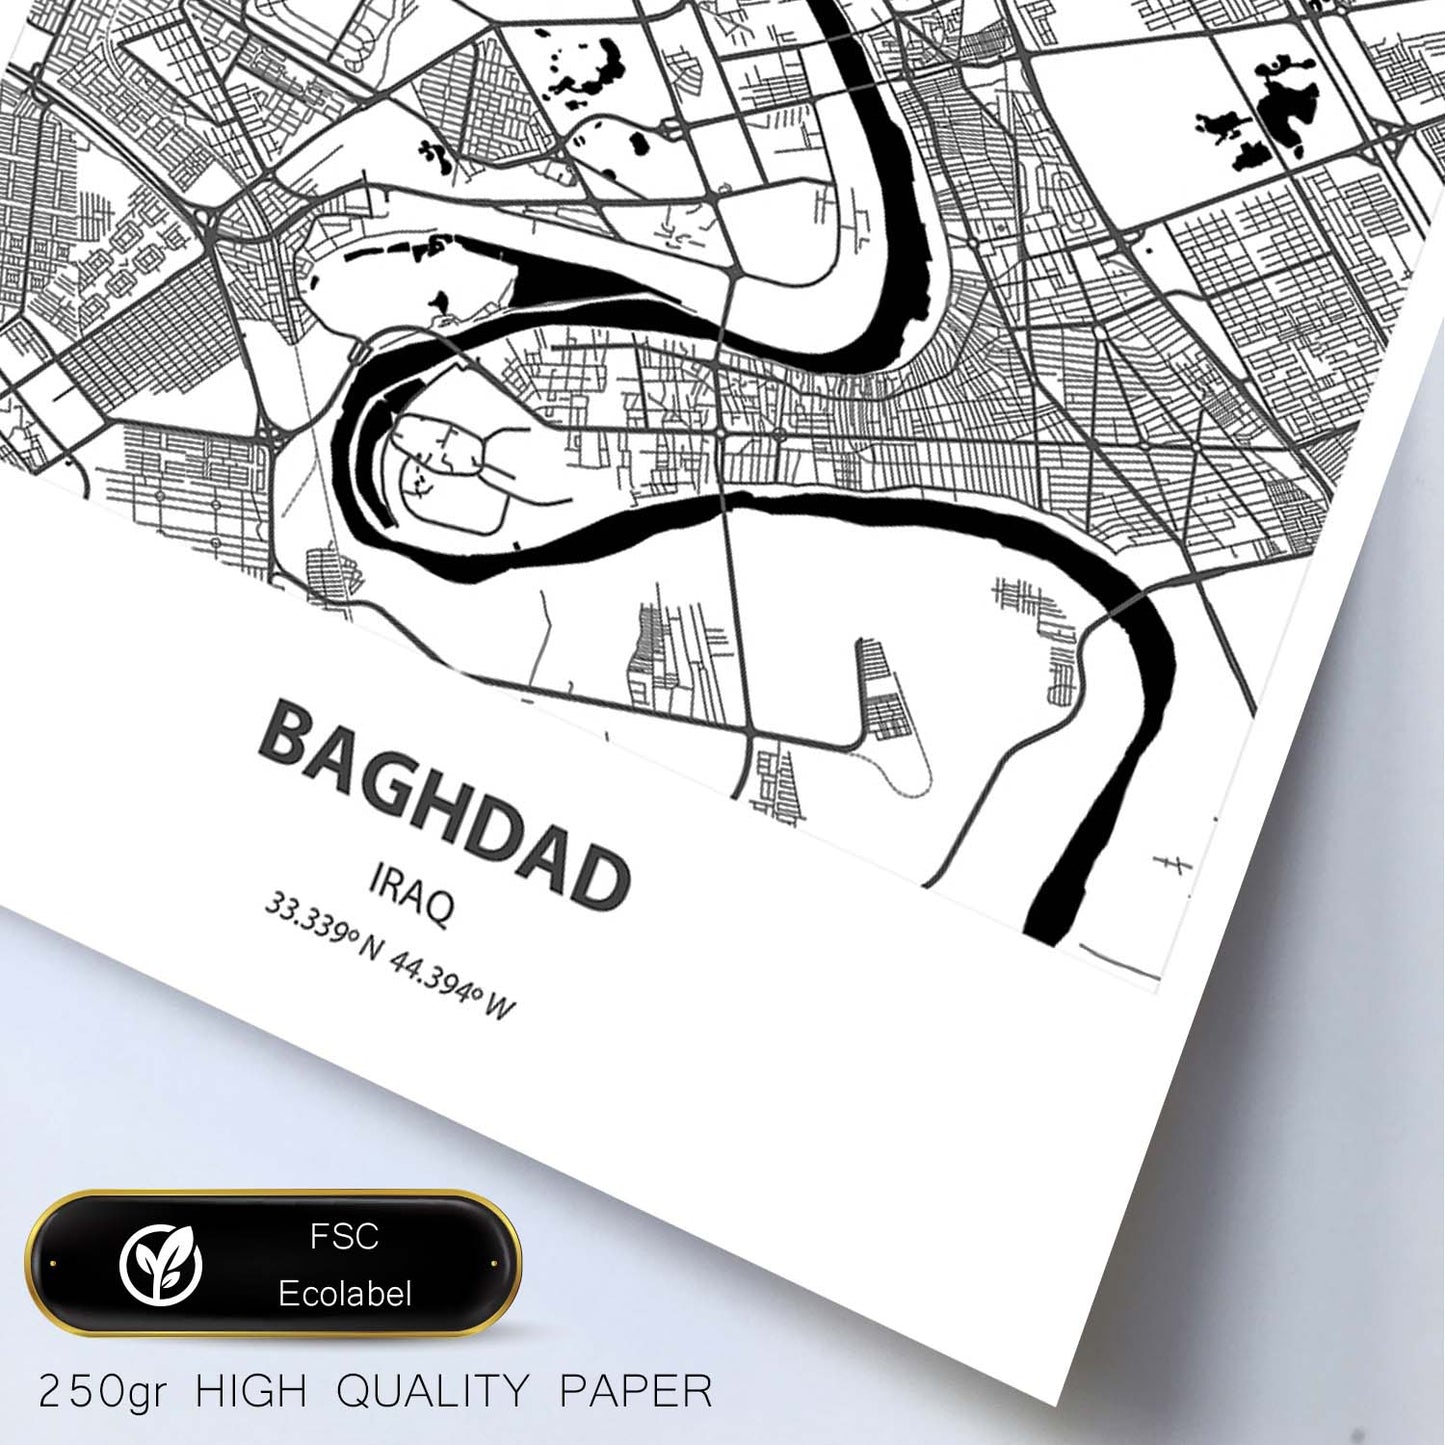 Poster con mapa de Baghdad - Iraq. Láminas de ciudades de Oriente Medio con mares y ríos en color negro.-Artwork-Nacnic-Nacnic Estudio SL